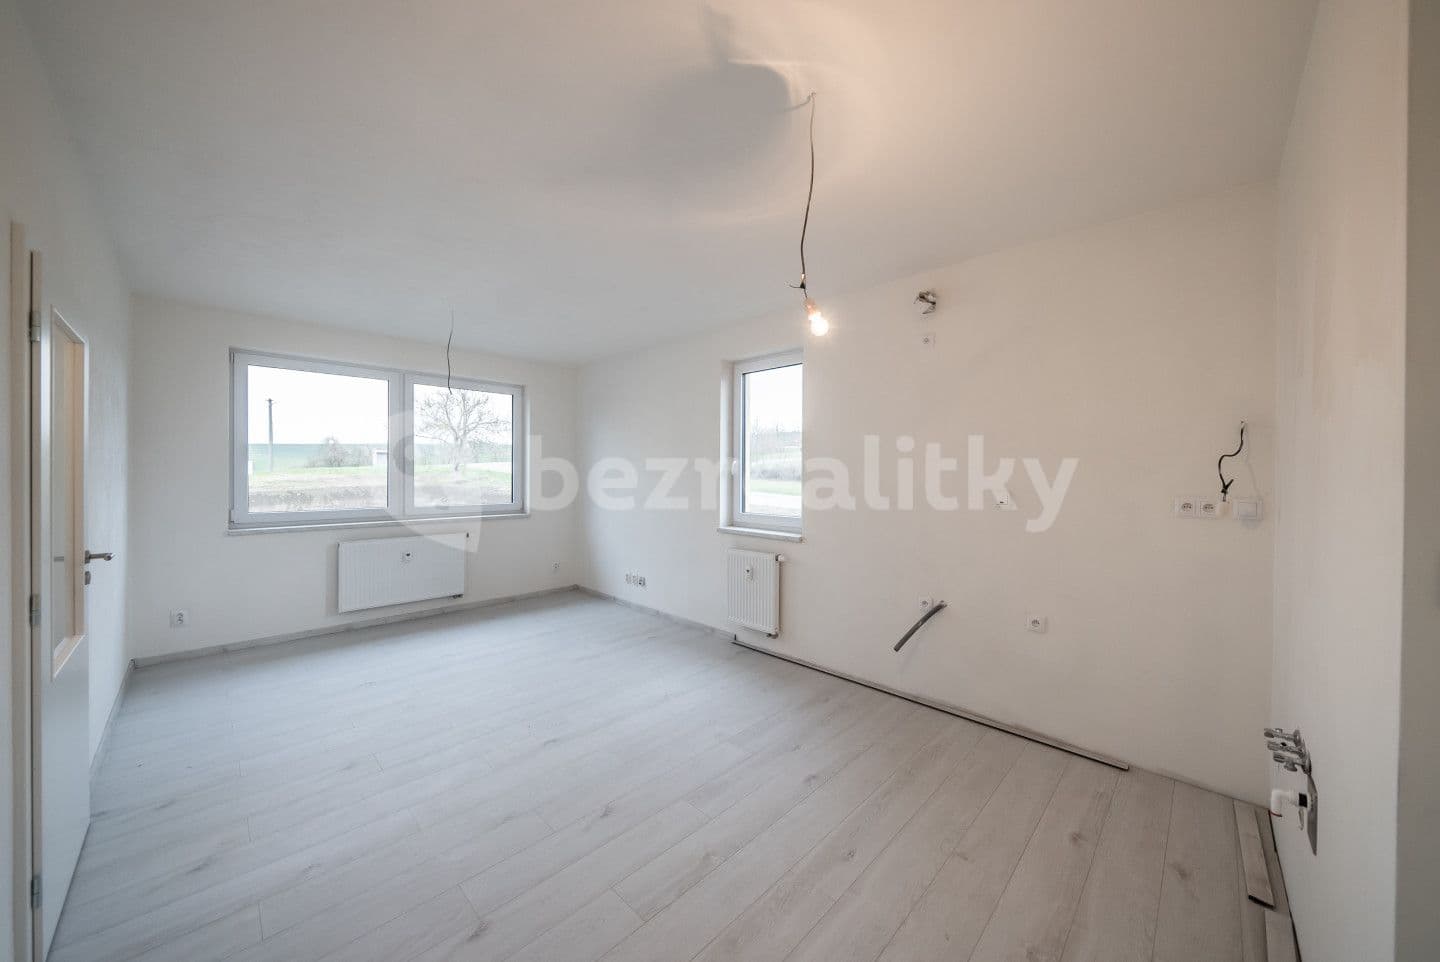 1 bedroom with open-plan kitchen flat for sale, 65 m², Žarošice, Jihomoravský Region